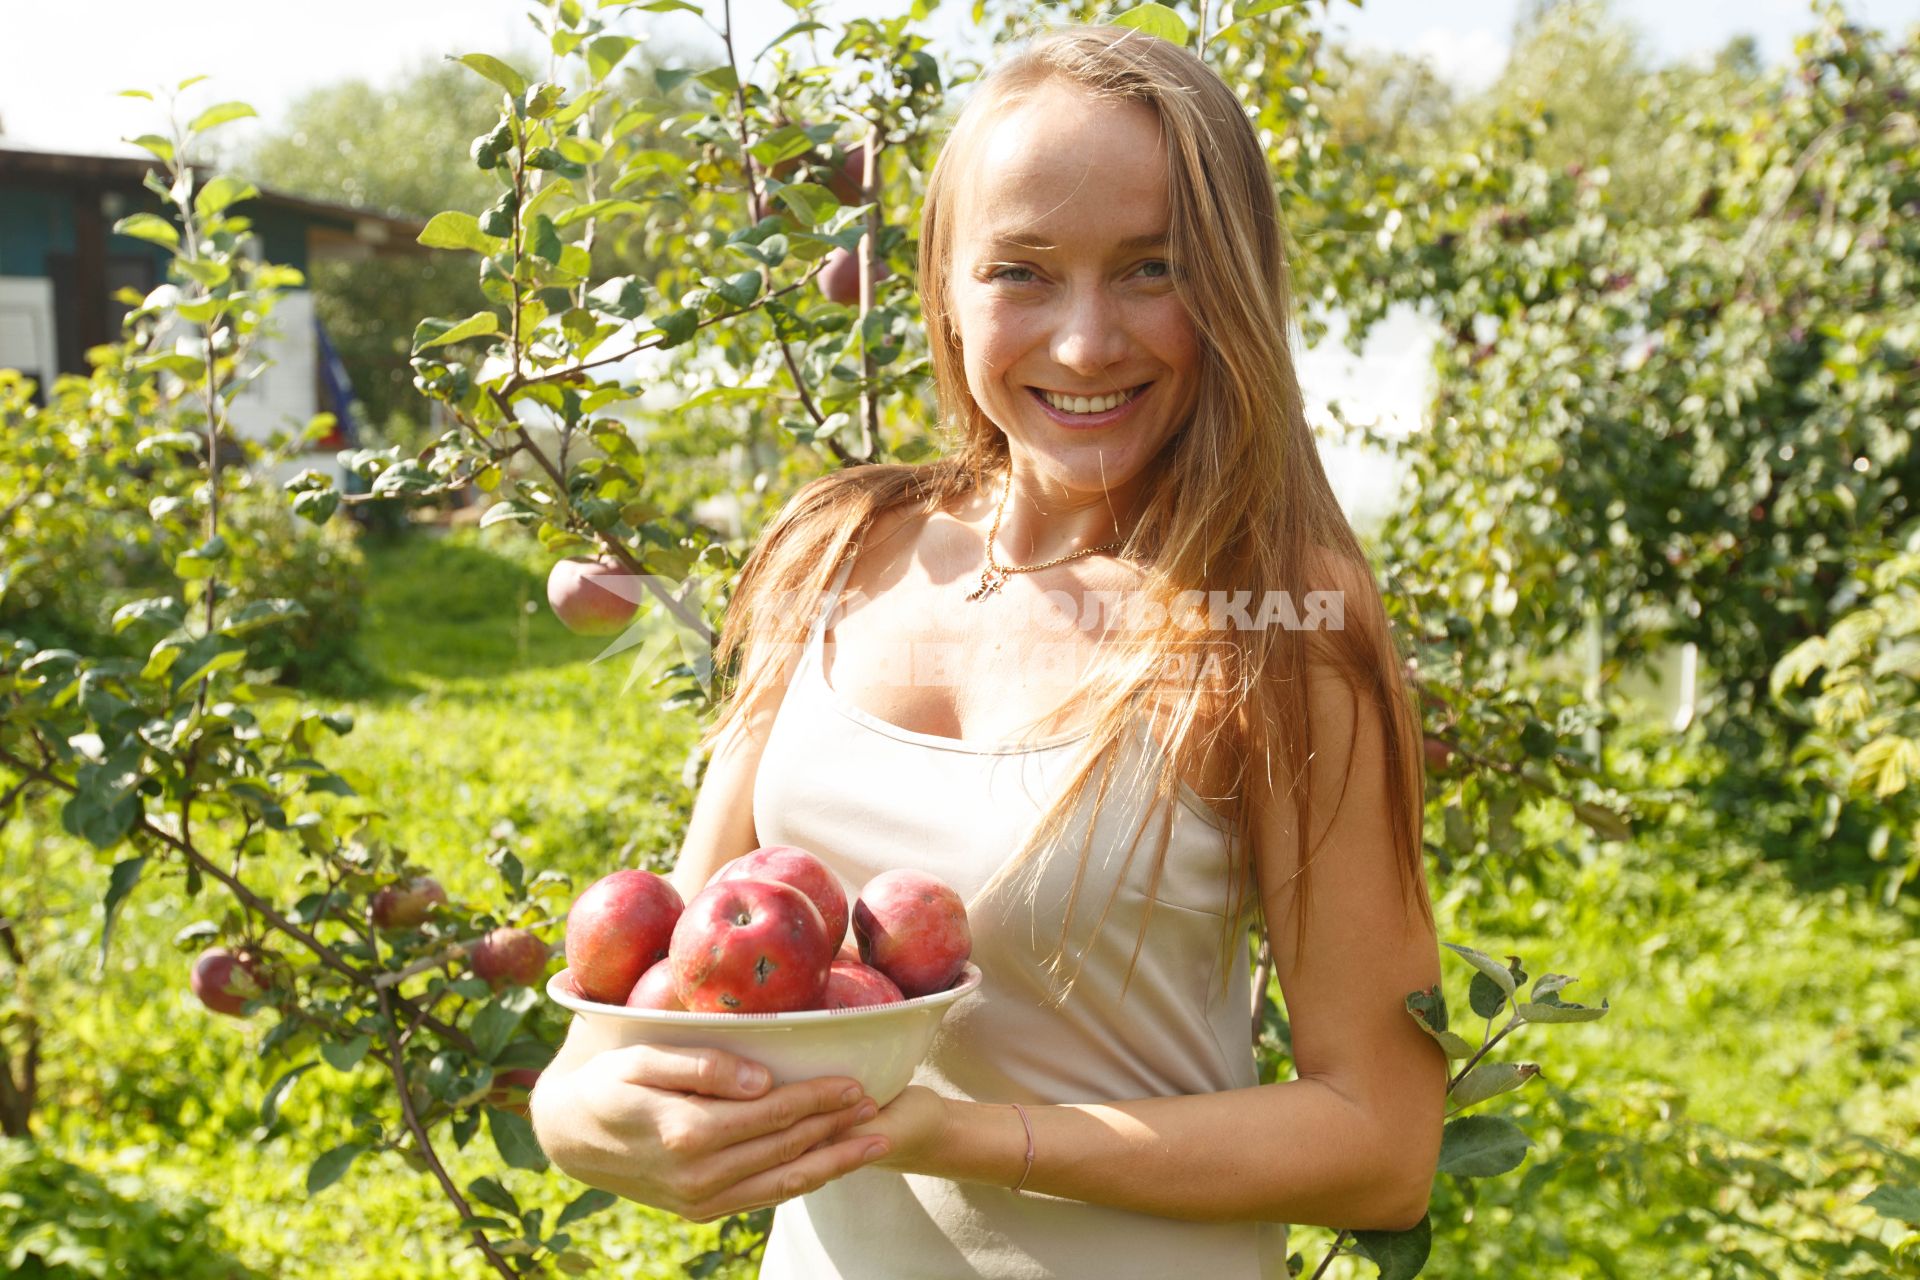 Ленинградская область.   Девушка собирает  урожай  яблок на даче.